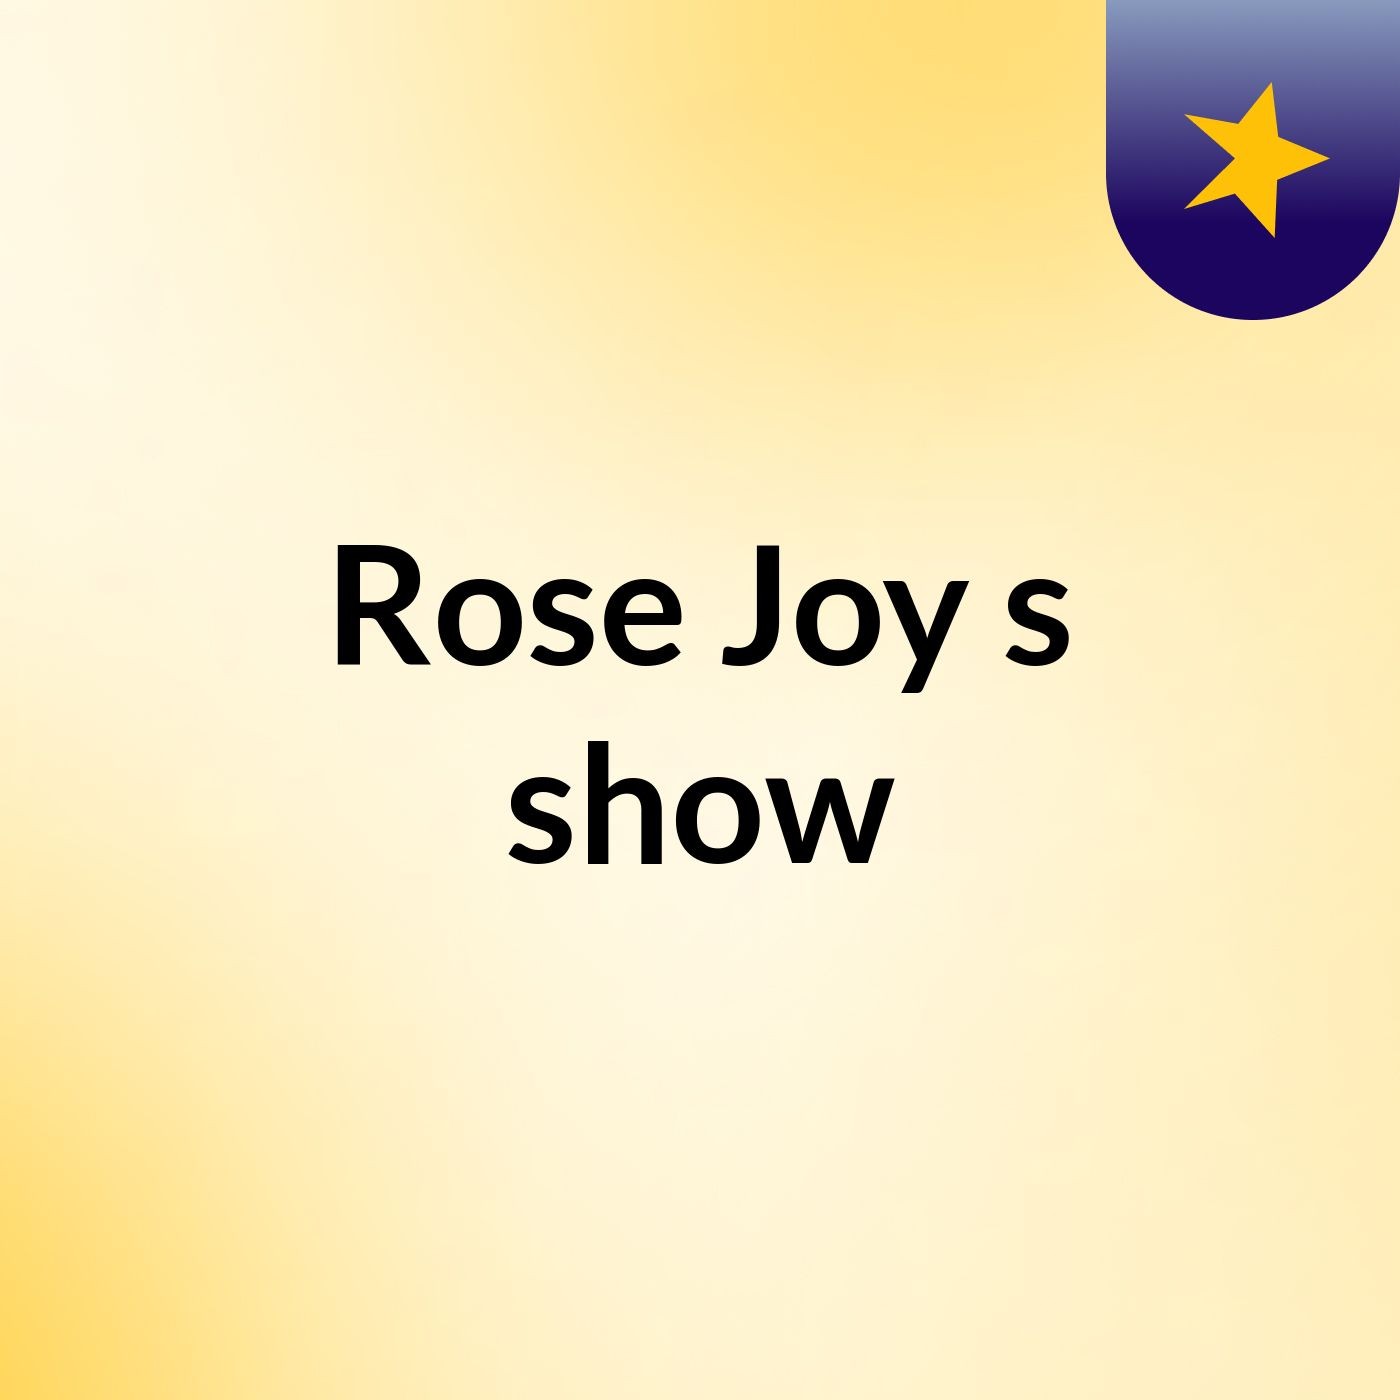 Rose Joy's show